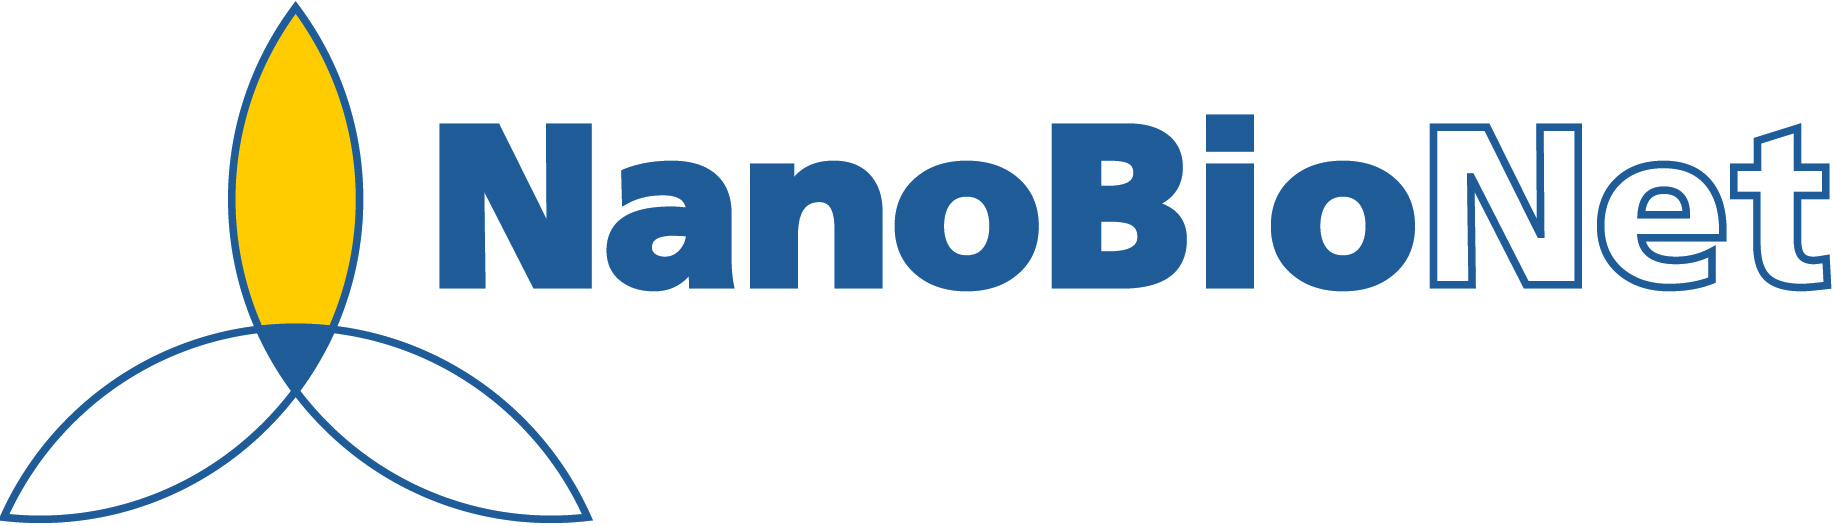 Nanobionet